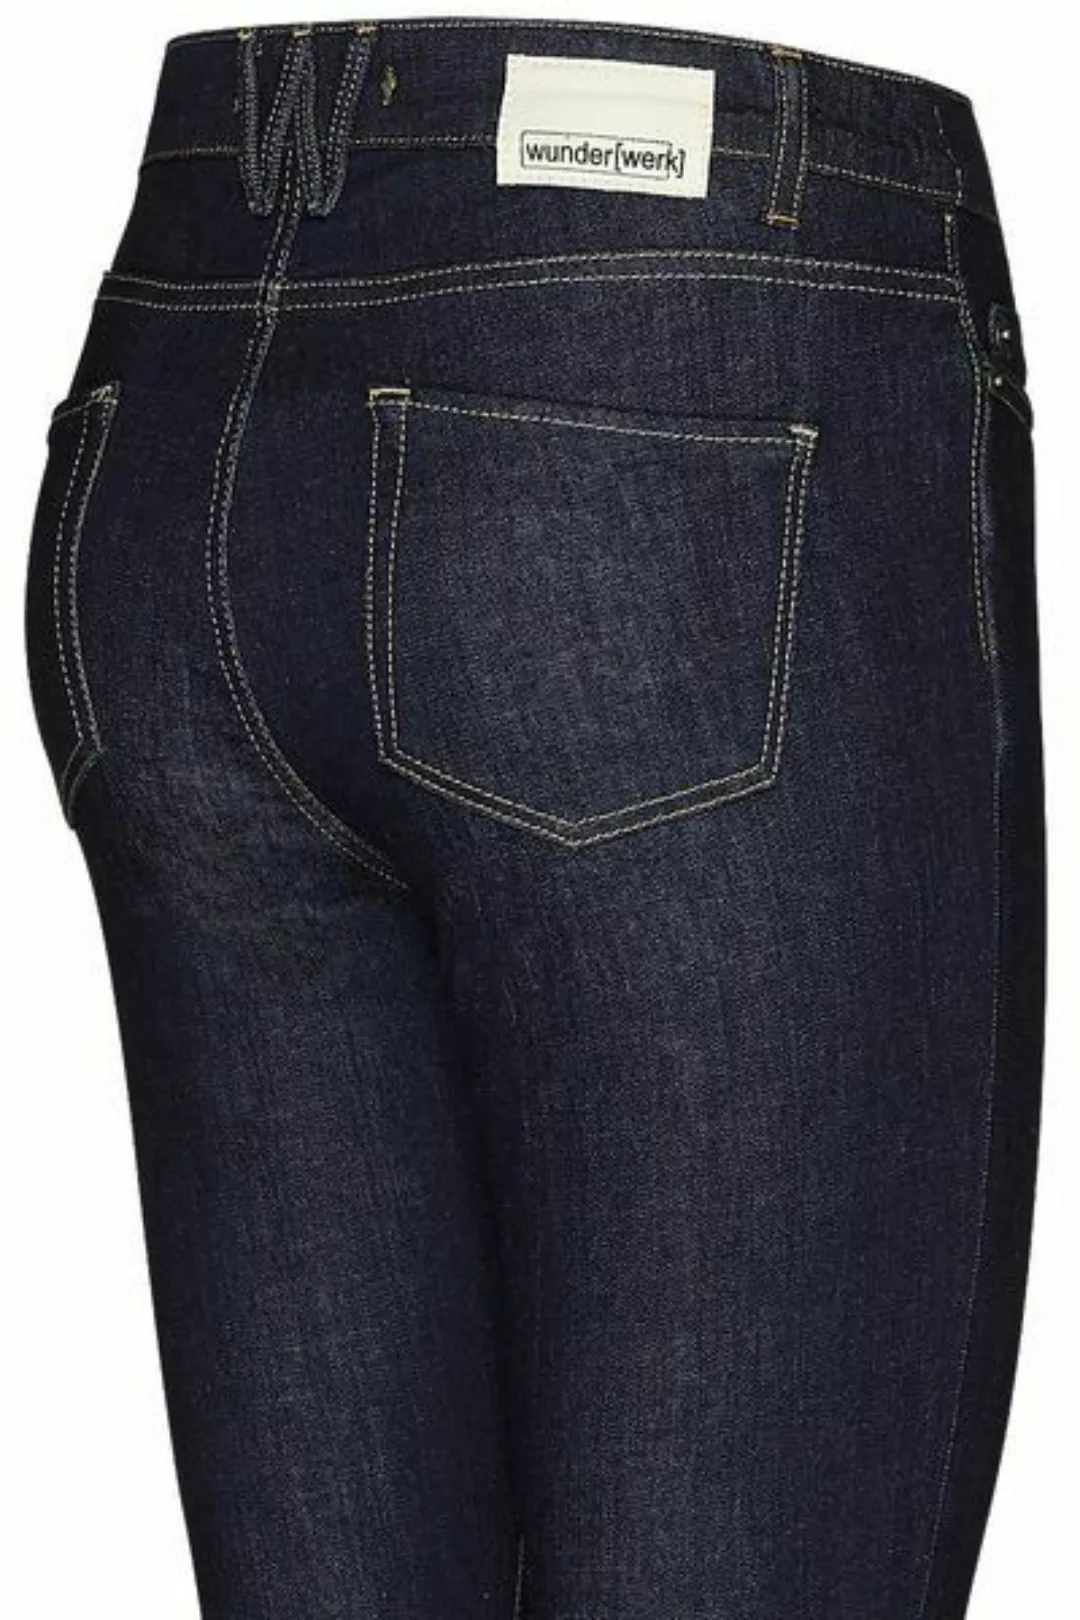 Keira Denim Slim Fit / High Waist Jeans günstig online kaufen